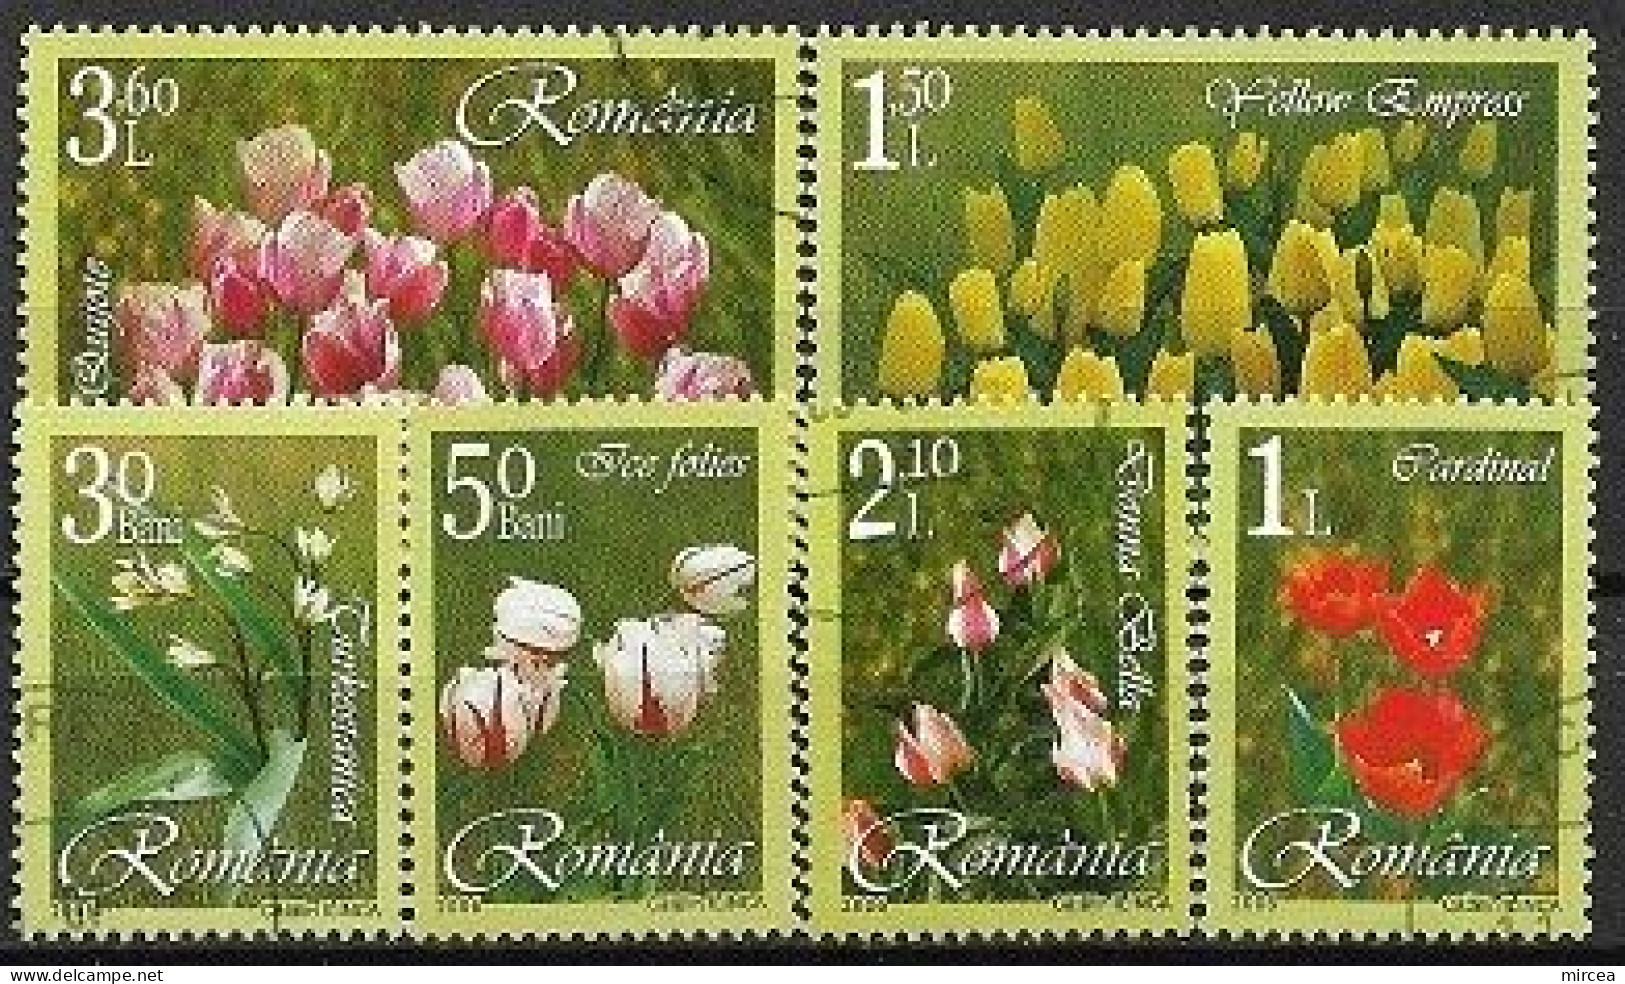 C3990 - Roumanie 2006 - Fleurs 6v.obliteres - Oblitérés